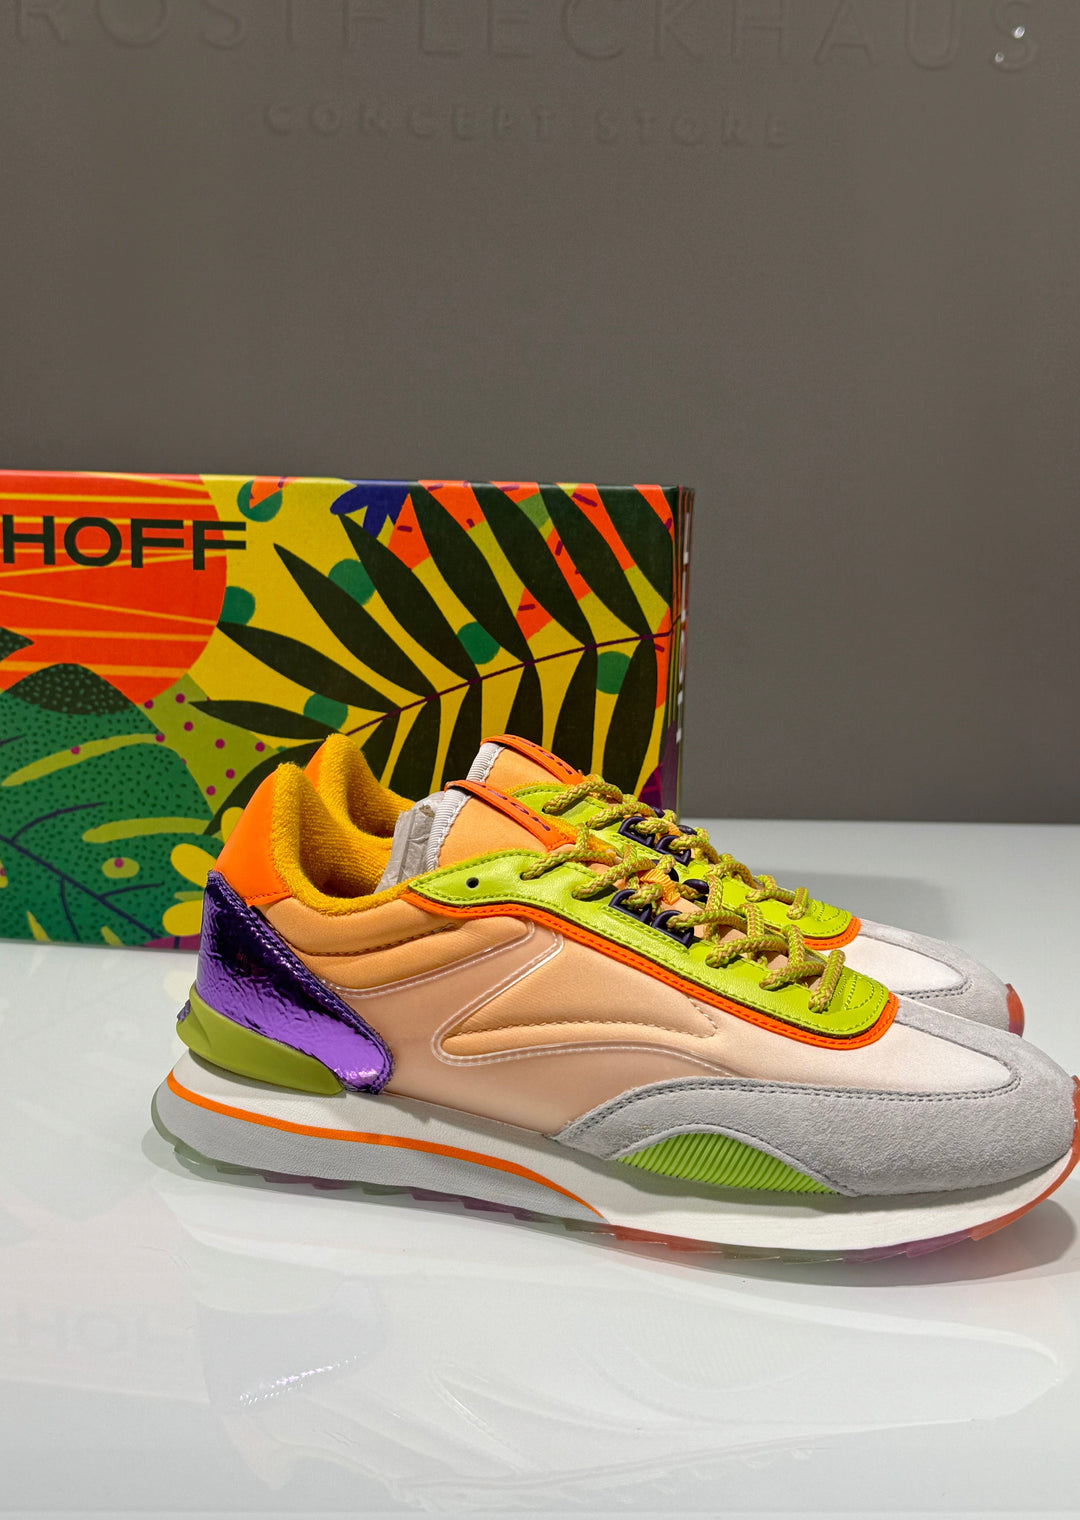 Hoff Sneaker - "Lychee" Orange/Lila/Grün